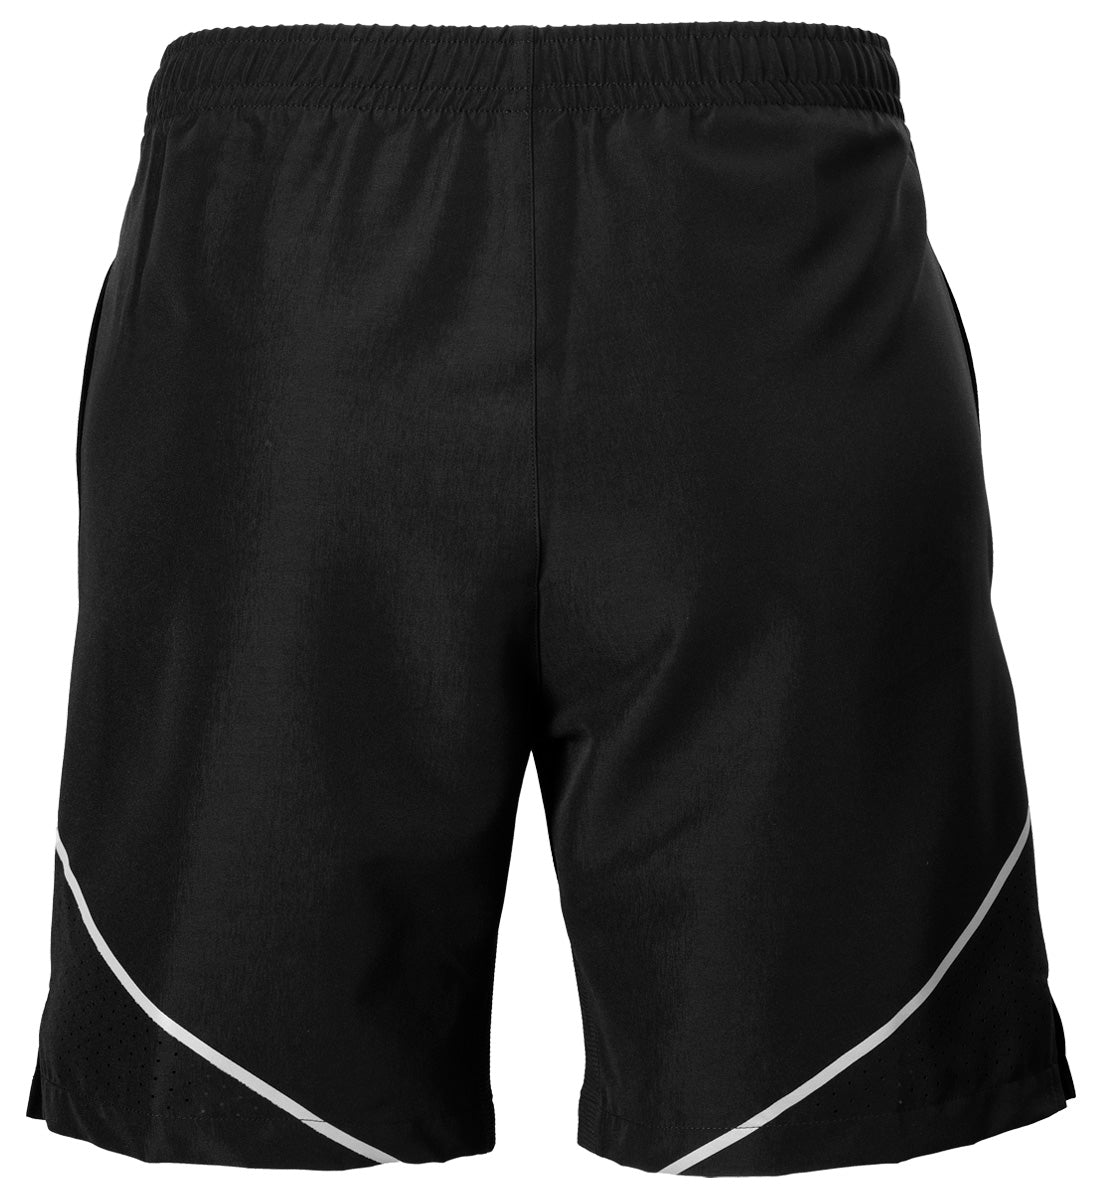 STIGA Pro Shorts Black